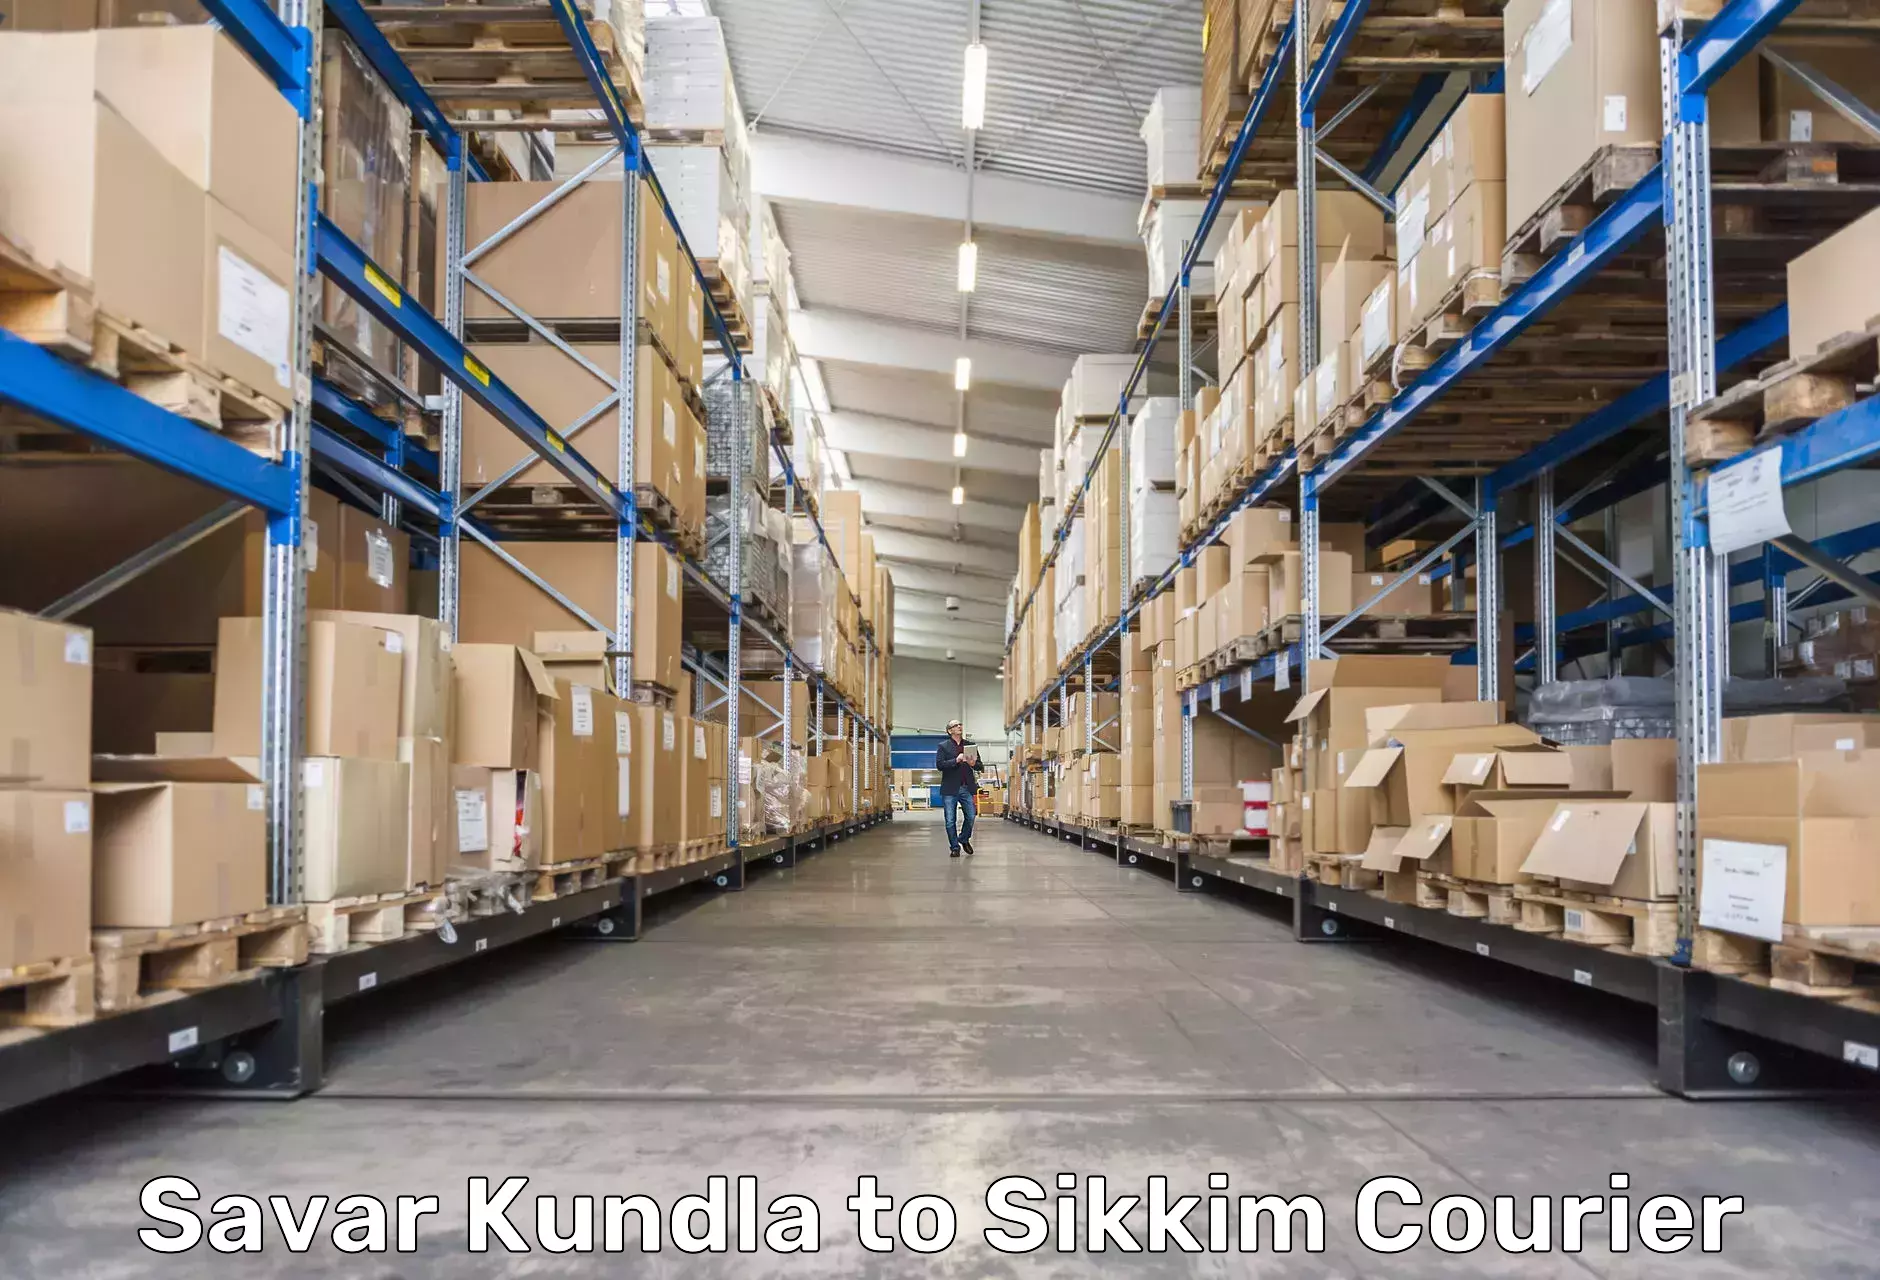 Logistics service provider Savar Kundla to NIT Sikkim